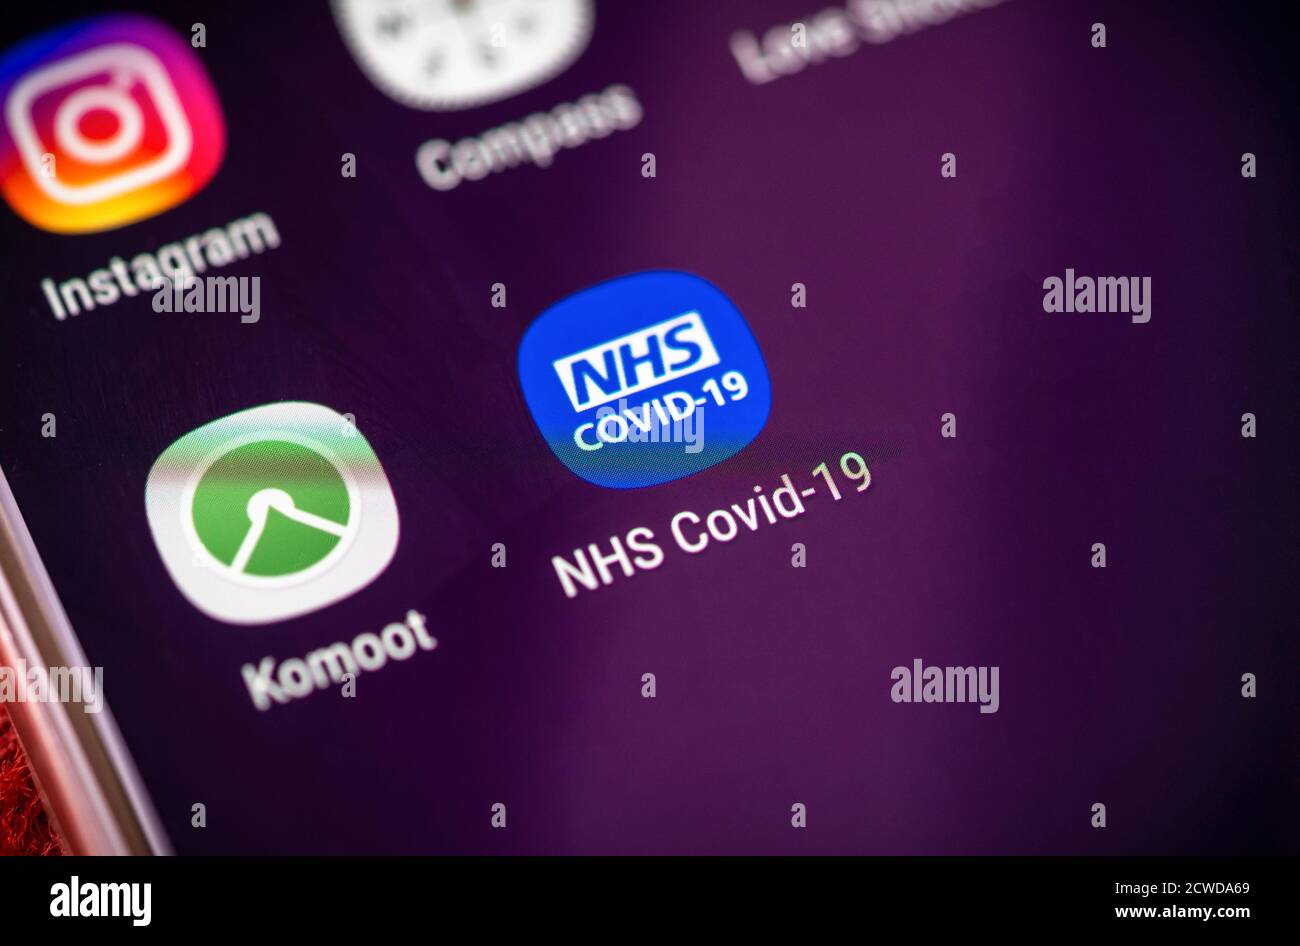 Icona dell'app NHS Covid-19 sullo schermo di un telefono cellulare, l'app è stata lanciata il 24 settembre 2020 per essere utilizzata come applicazione di tracciamento dei contatti in Inghilterra e Galles, Regno Unito Foto Stock